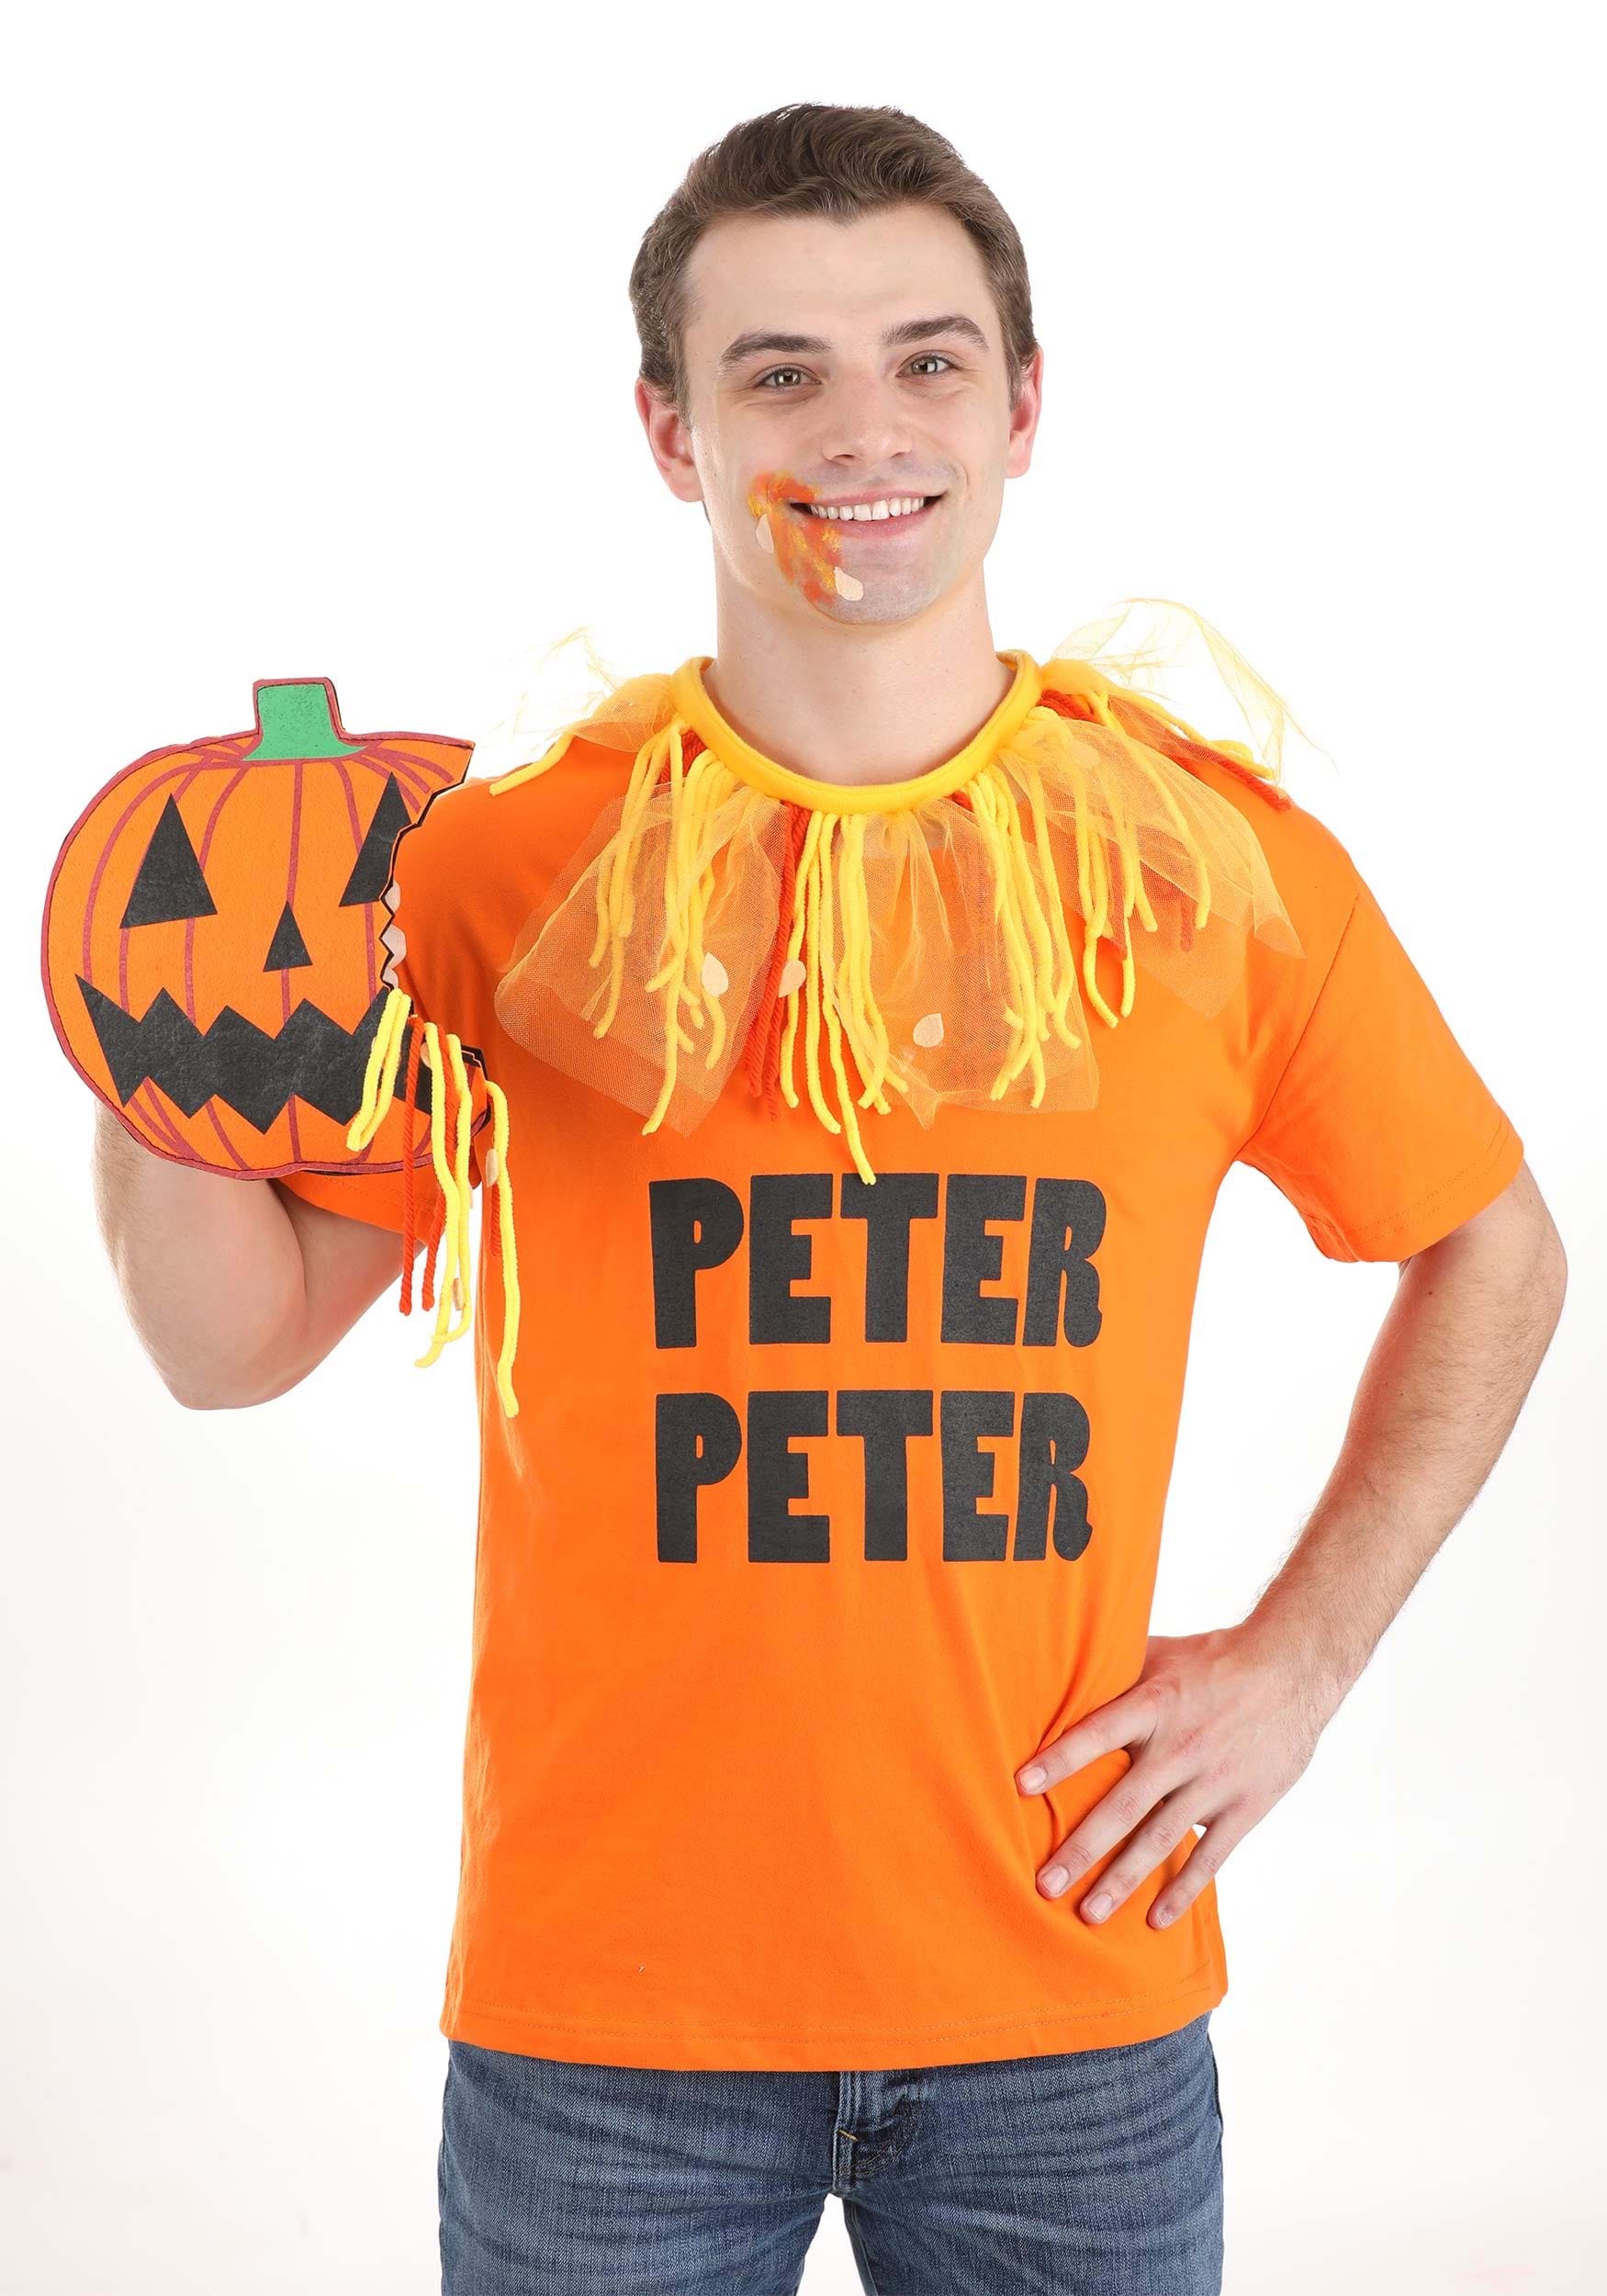 Peter peter pumpkin eater costume